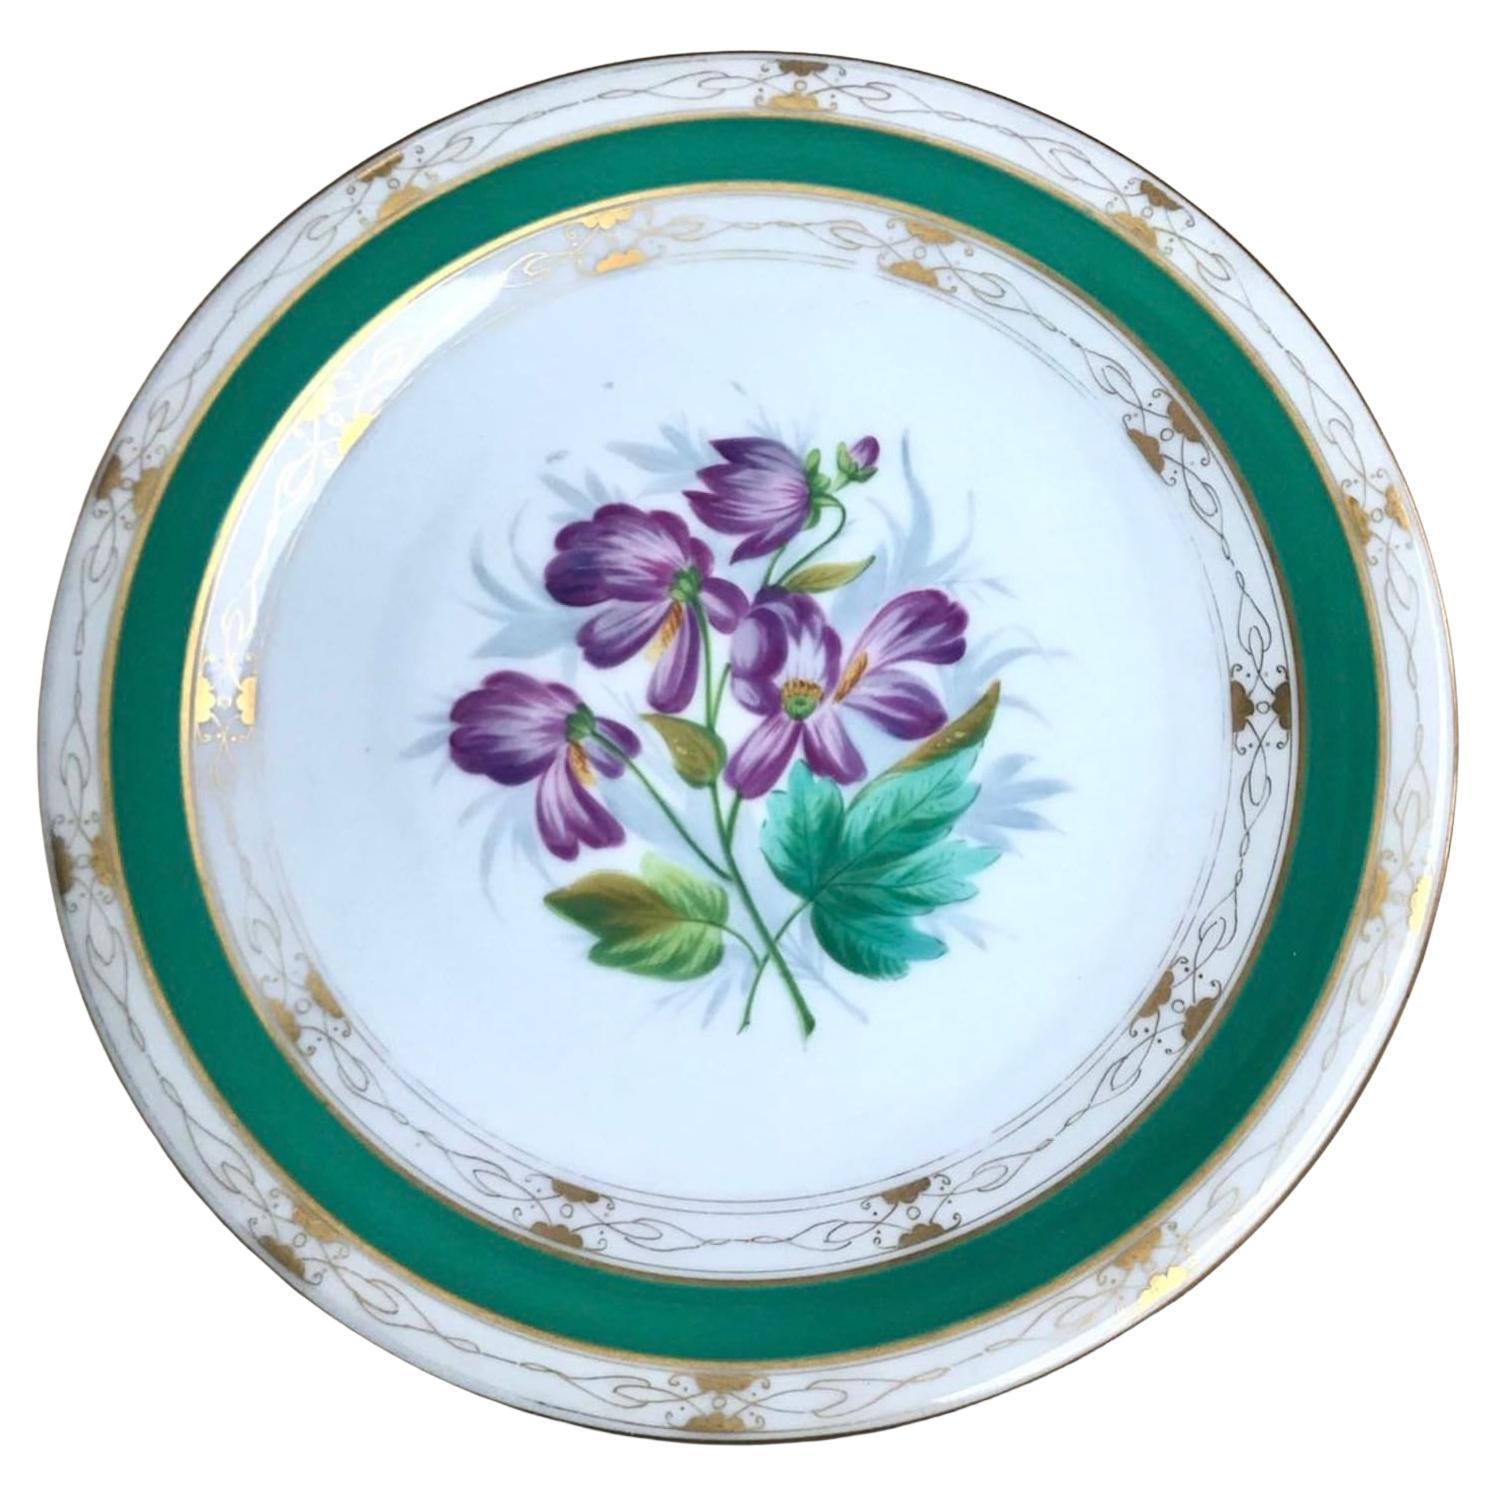 Antique Collectible Plates 19 Century Porcelain Plates For Sale